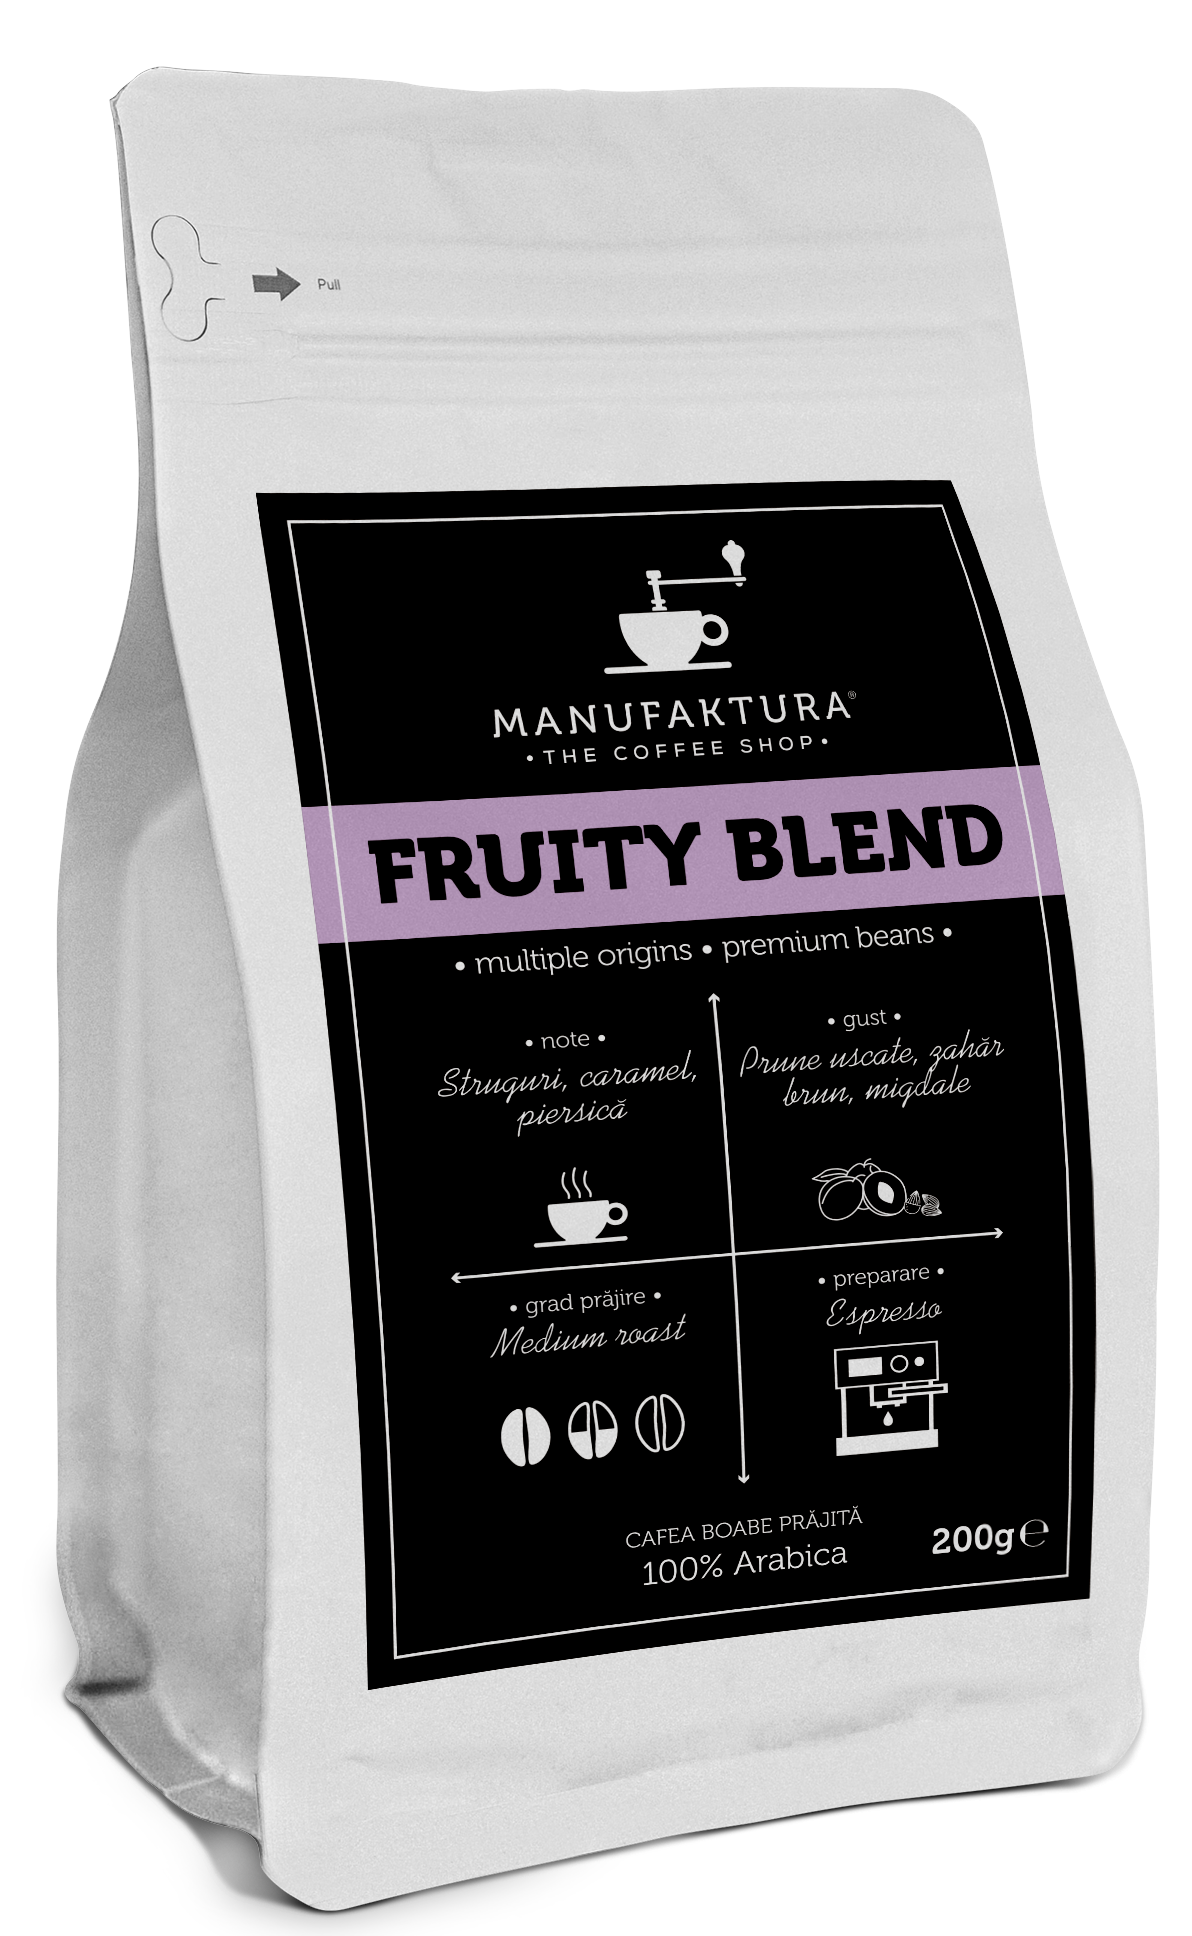  Cafea boabe - Fruity Blend | Manufaktura 